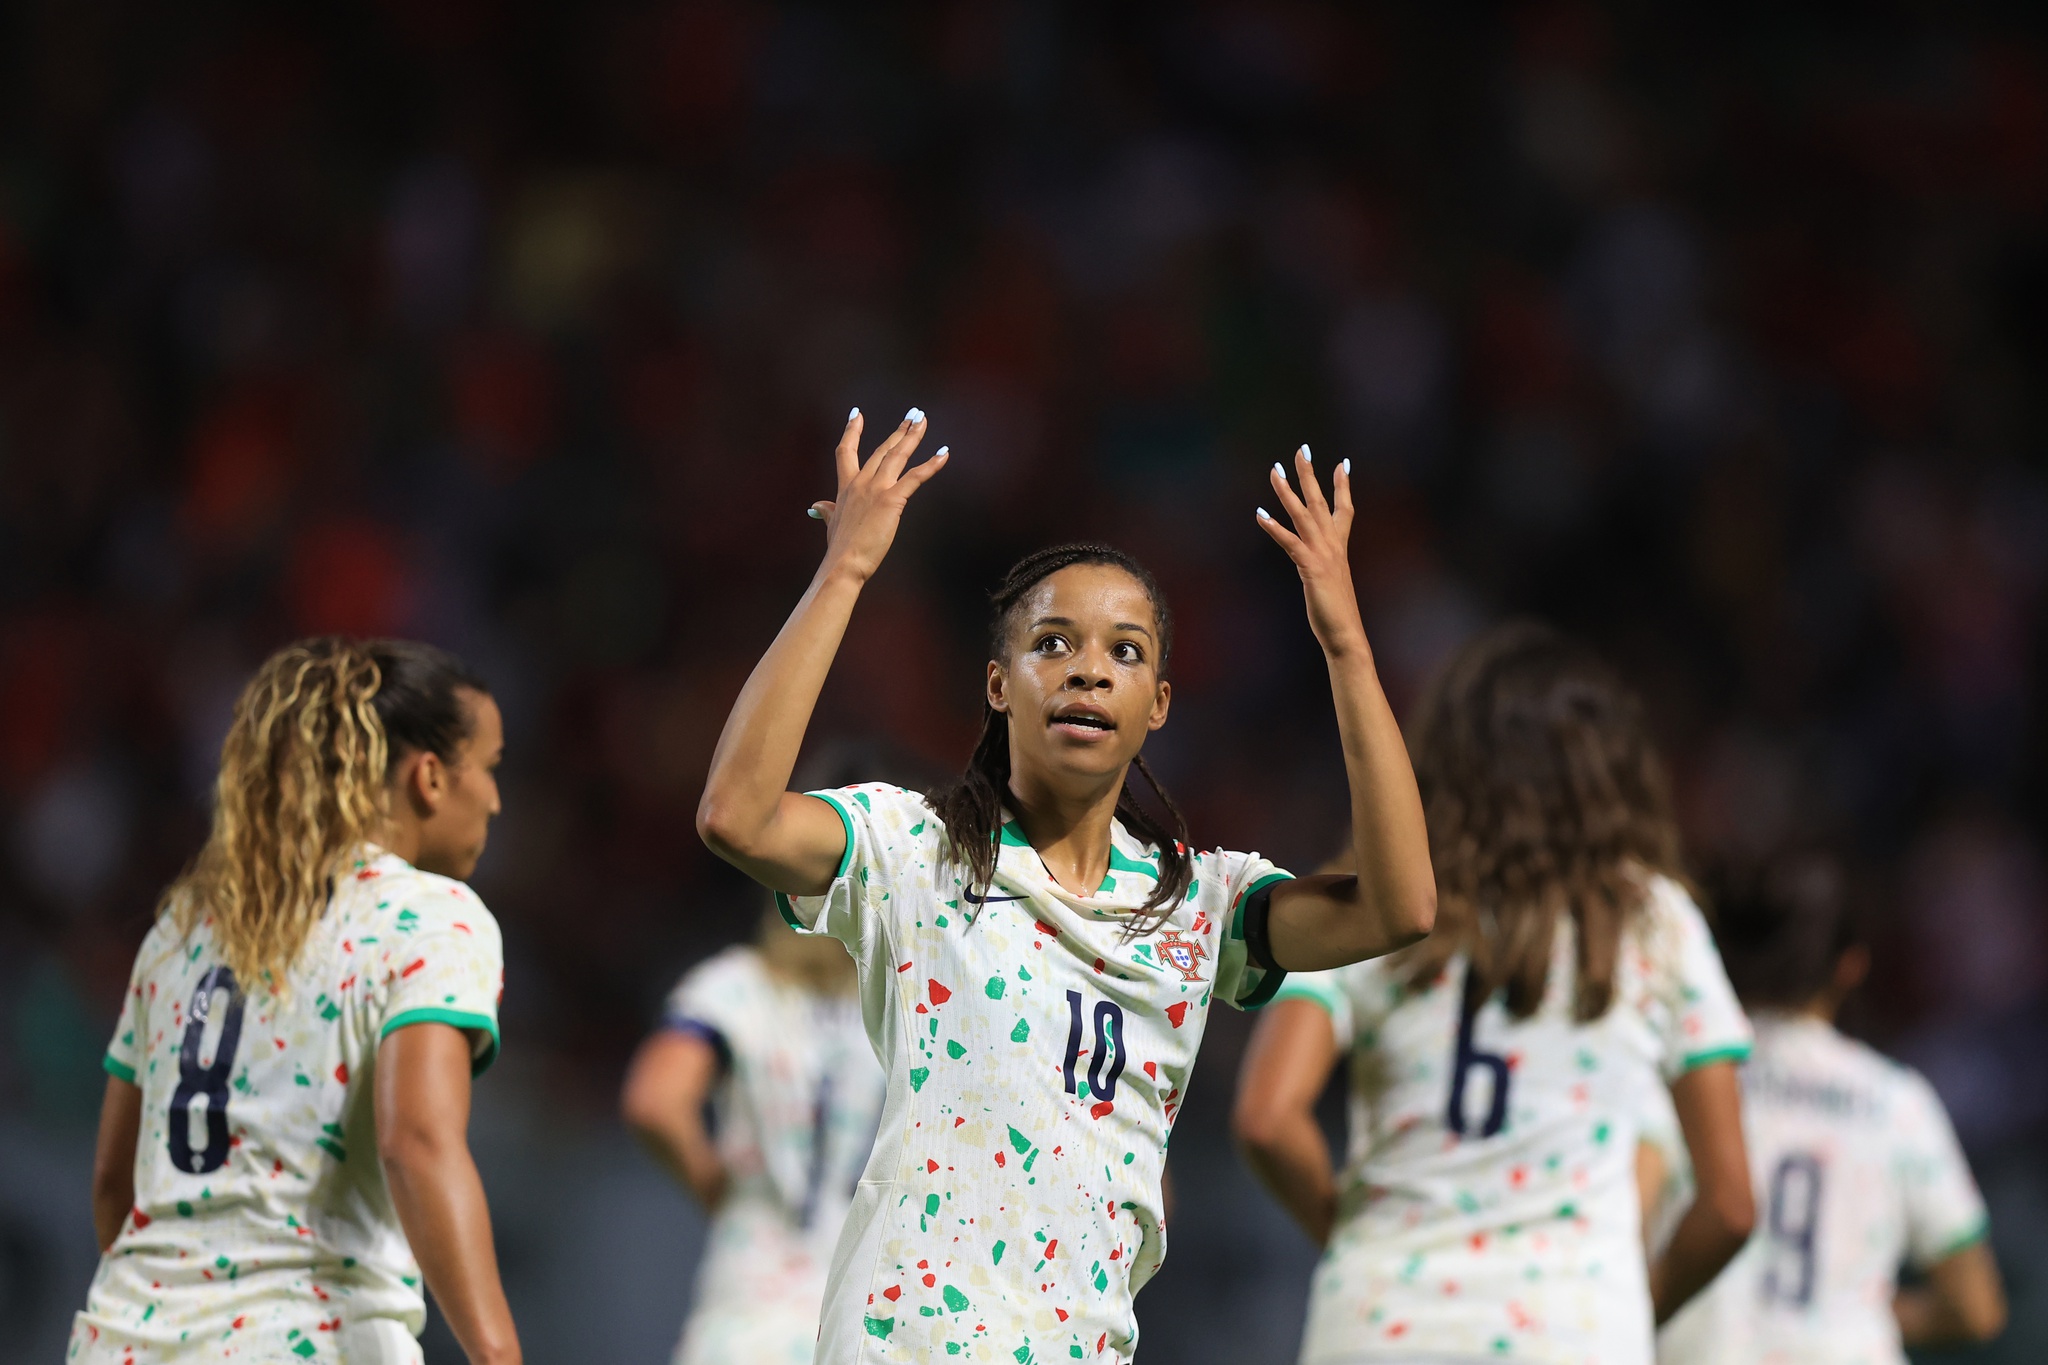 Portugal - Nigéria, a seleção em direto na RTP